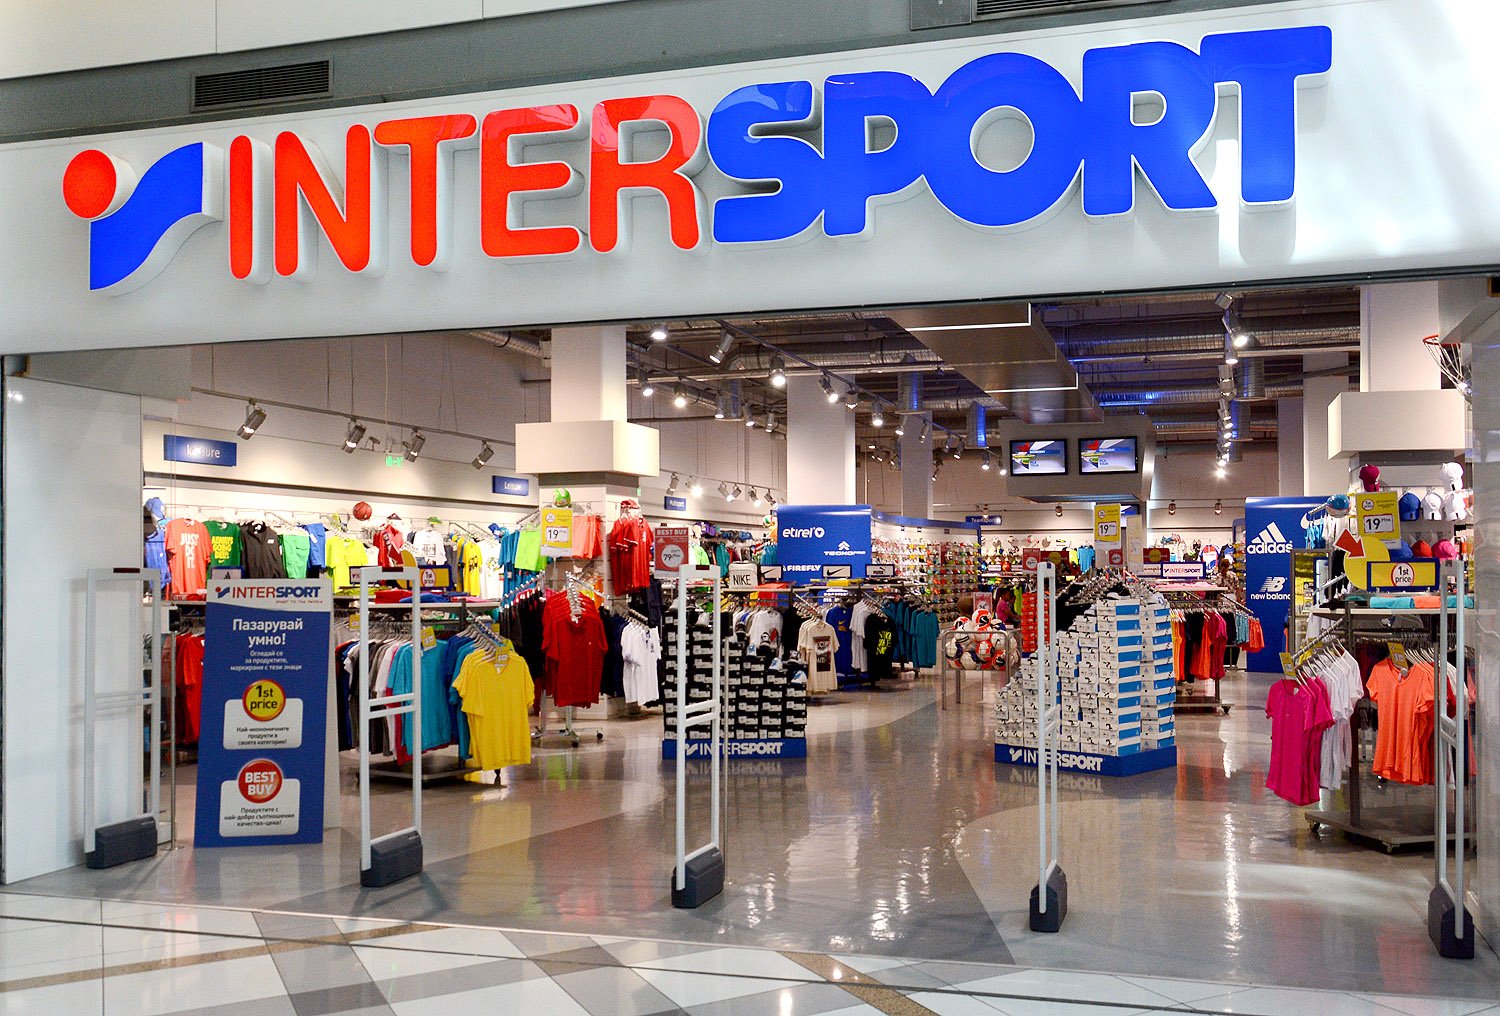  Intersport şi-a deschis magazin în Iulius Mall